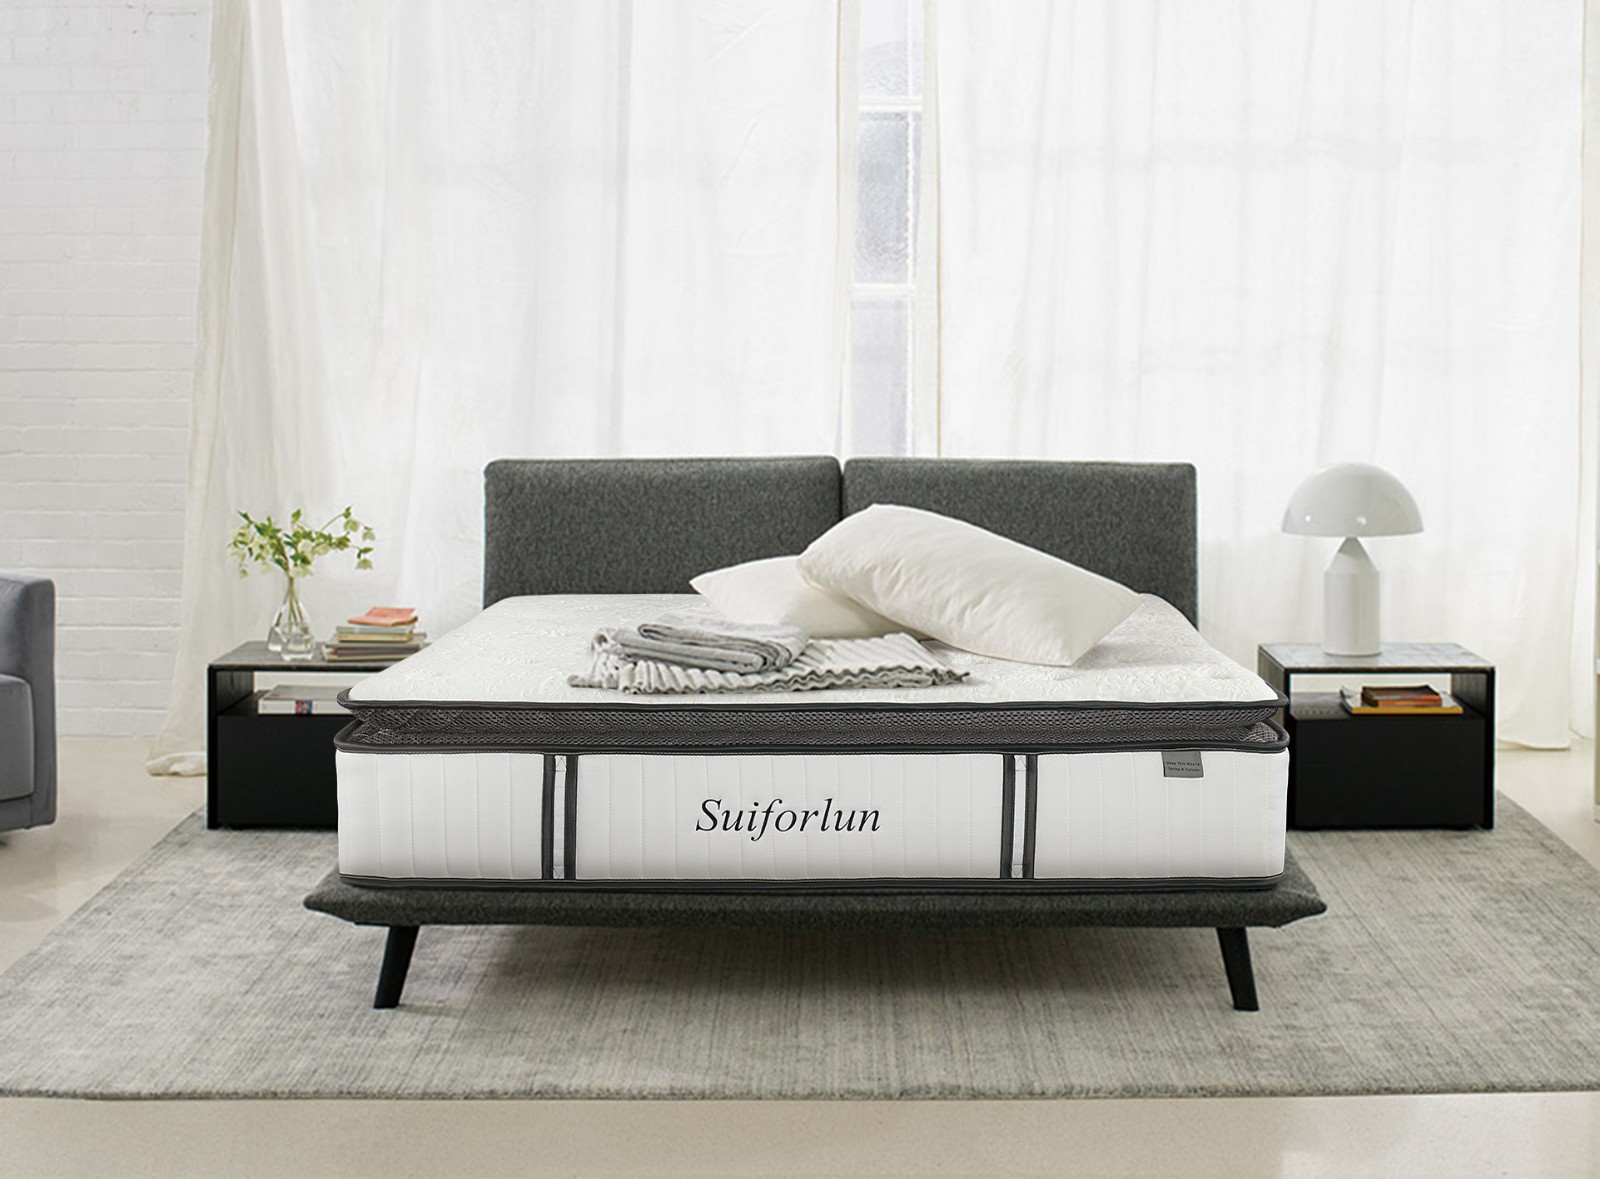 Suiforlun mattress chicest hybrid bed quick transaction-1